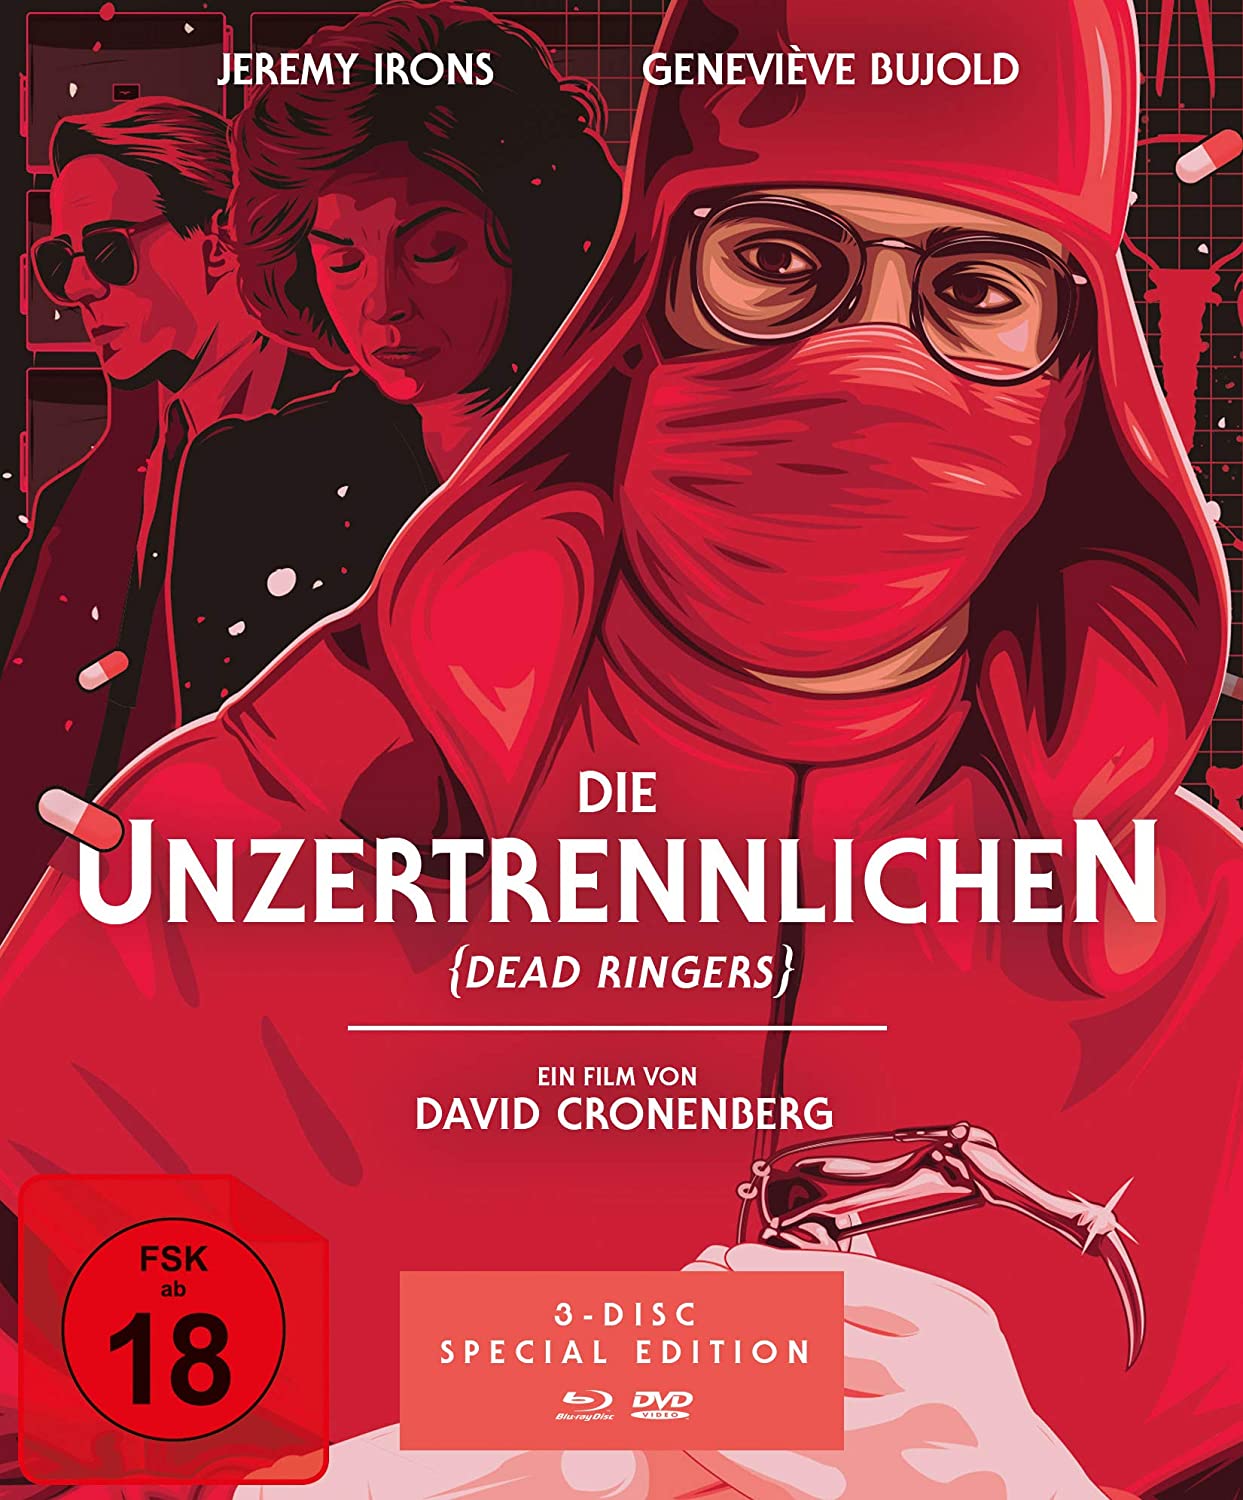 Die Unzertrennlichen - The Dead Ringers (Special Edition, 1 Blu-ray + 2 DVDs)